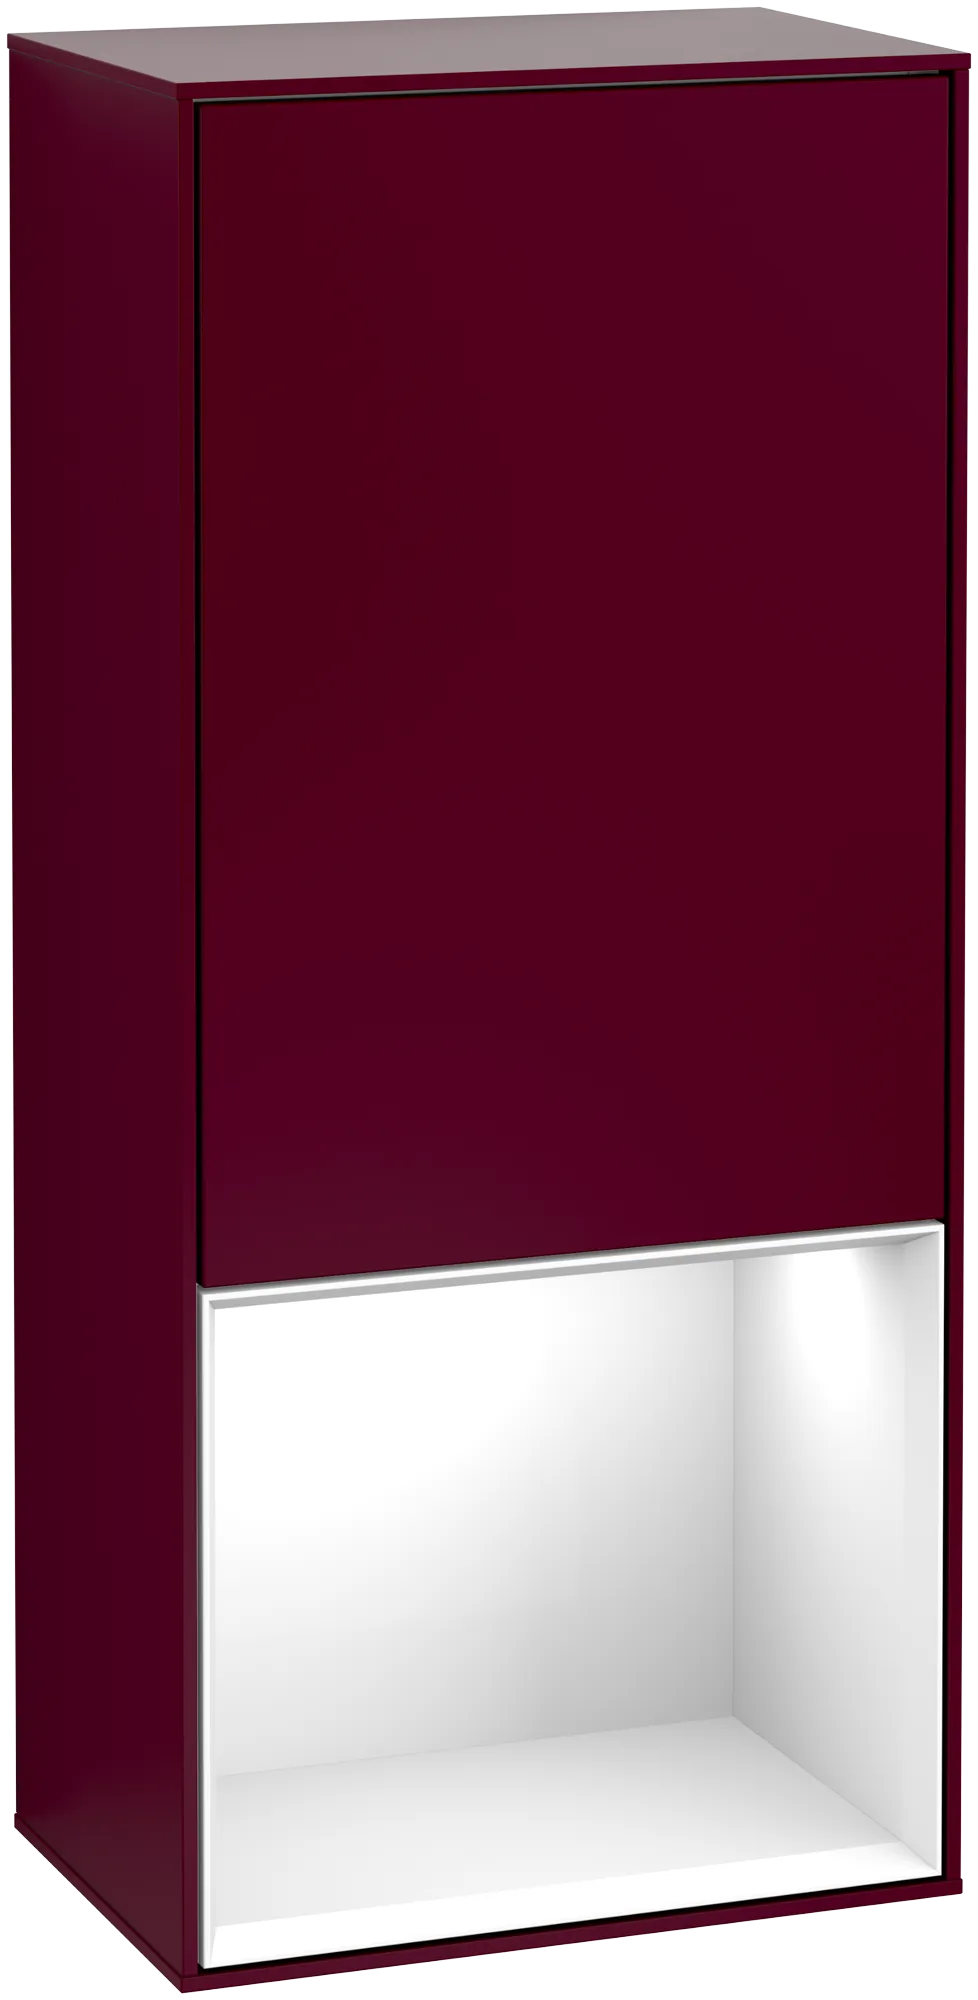 Bild von VILLEROY BOCH Finion Seitenschrank, mit Beleuchtung, 1 Tür, 418 x 936 x 270 mm, Peony Matt Lacquer / Glossy White Lacquer #G540GFHB